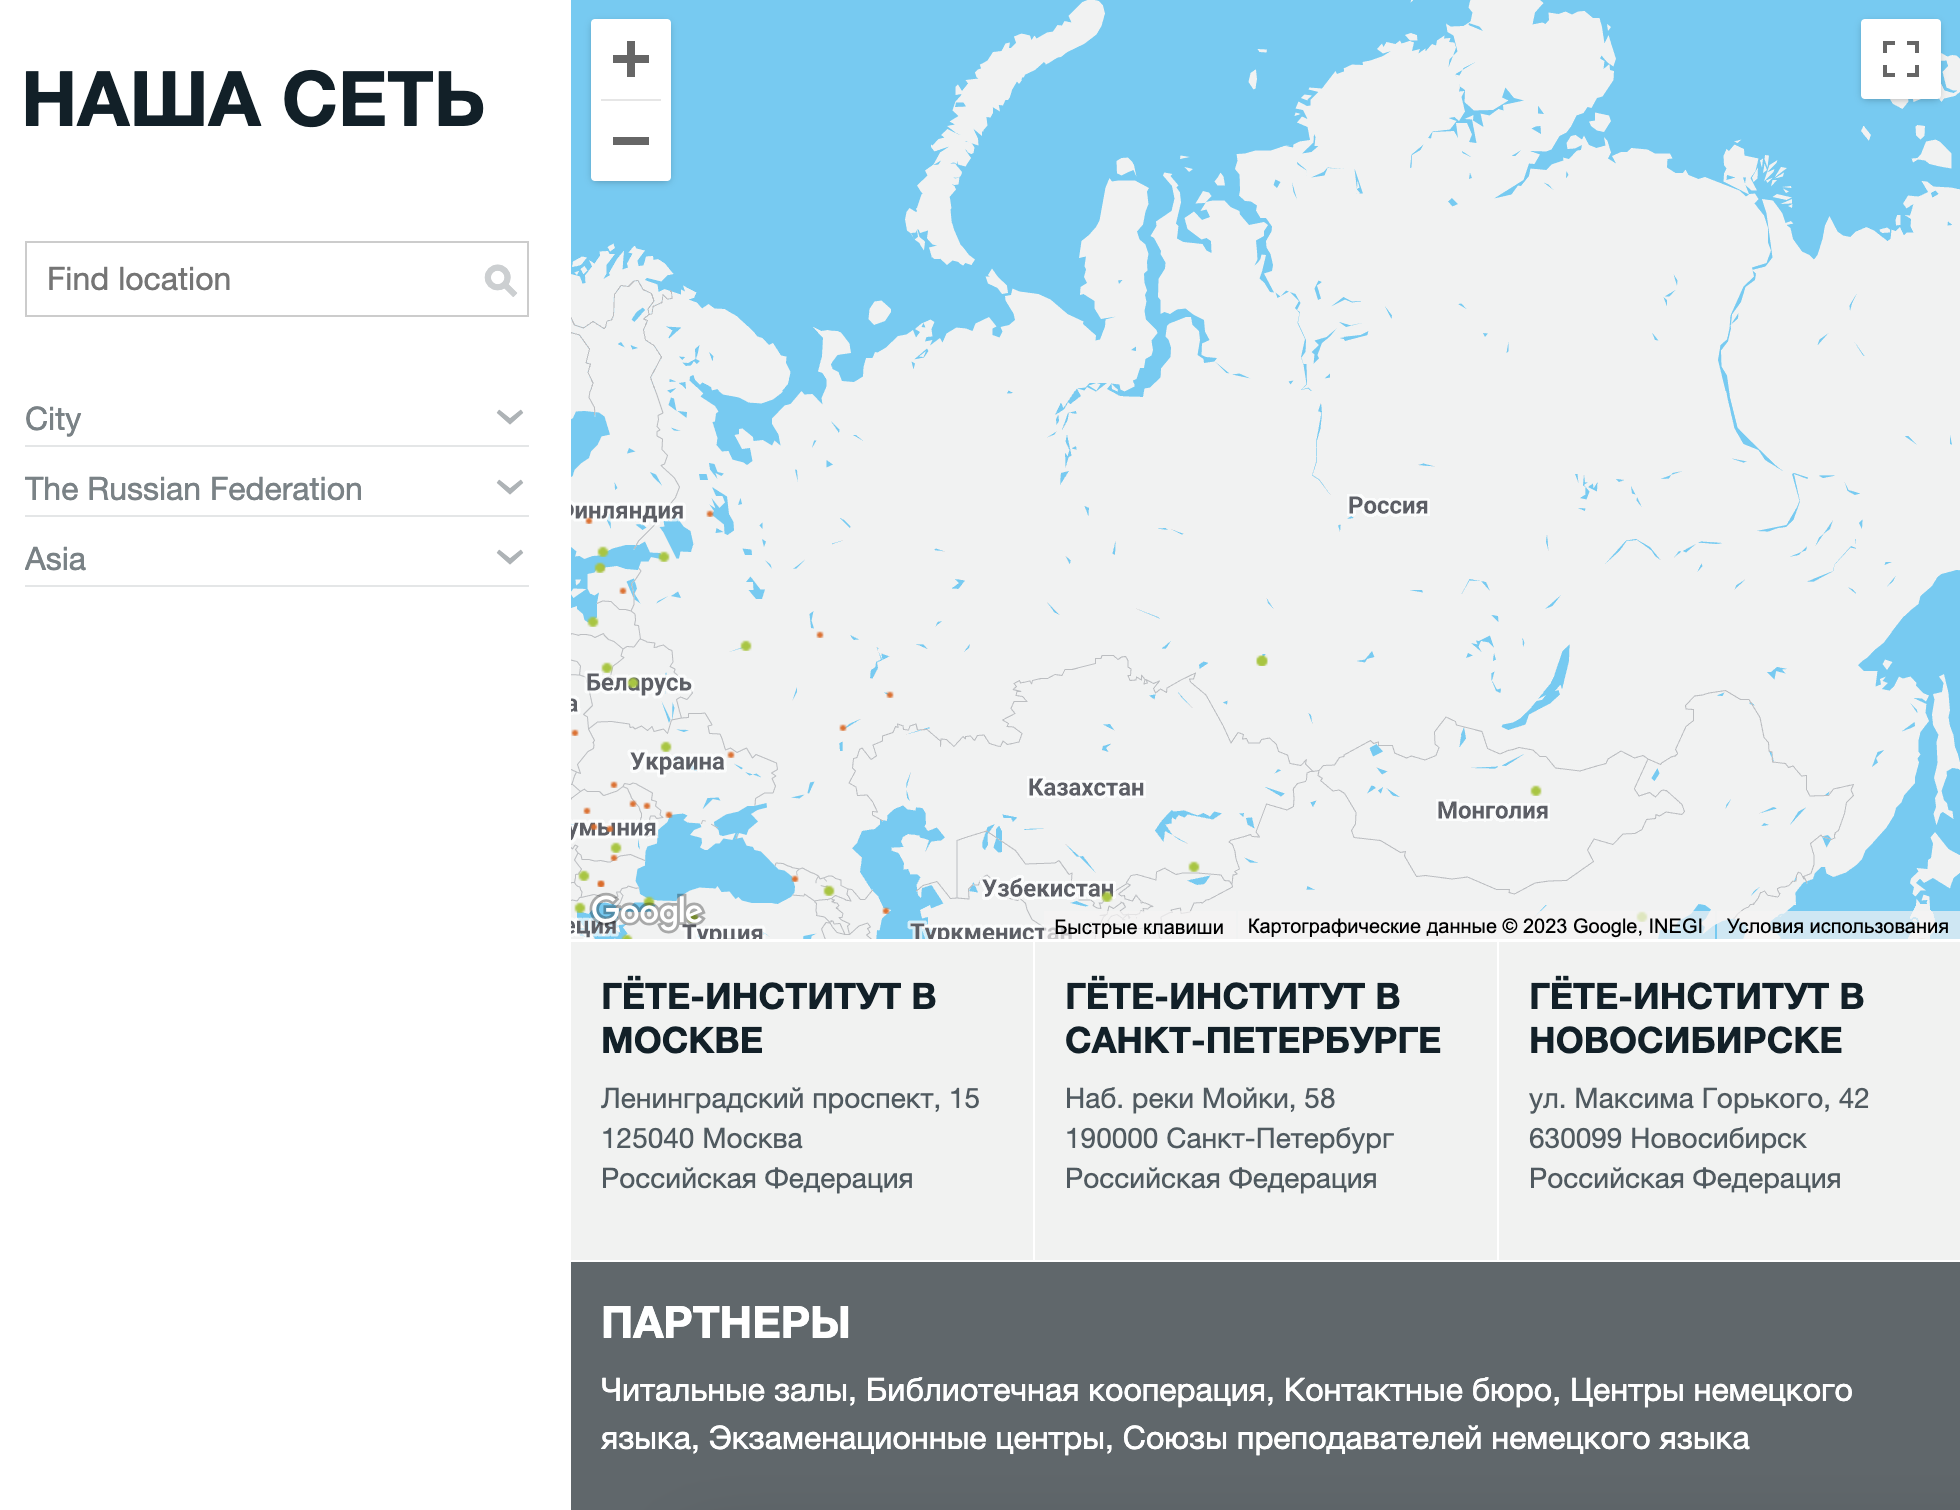 Гете-институт работает в трех городах: в Москве, Петербурге и Новосибирске